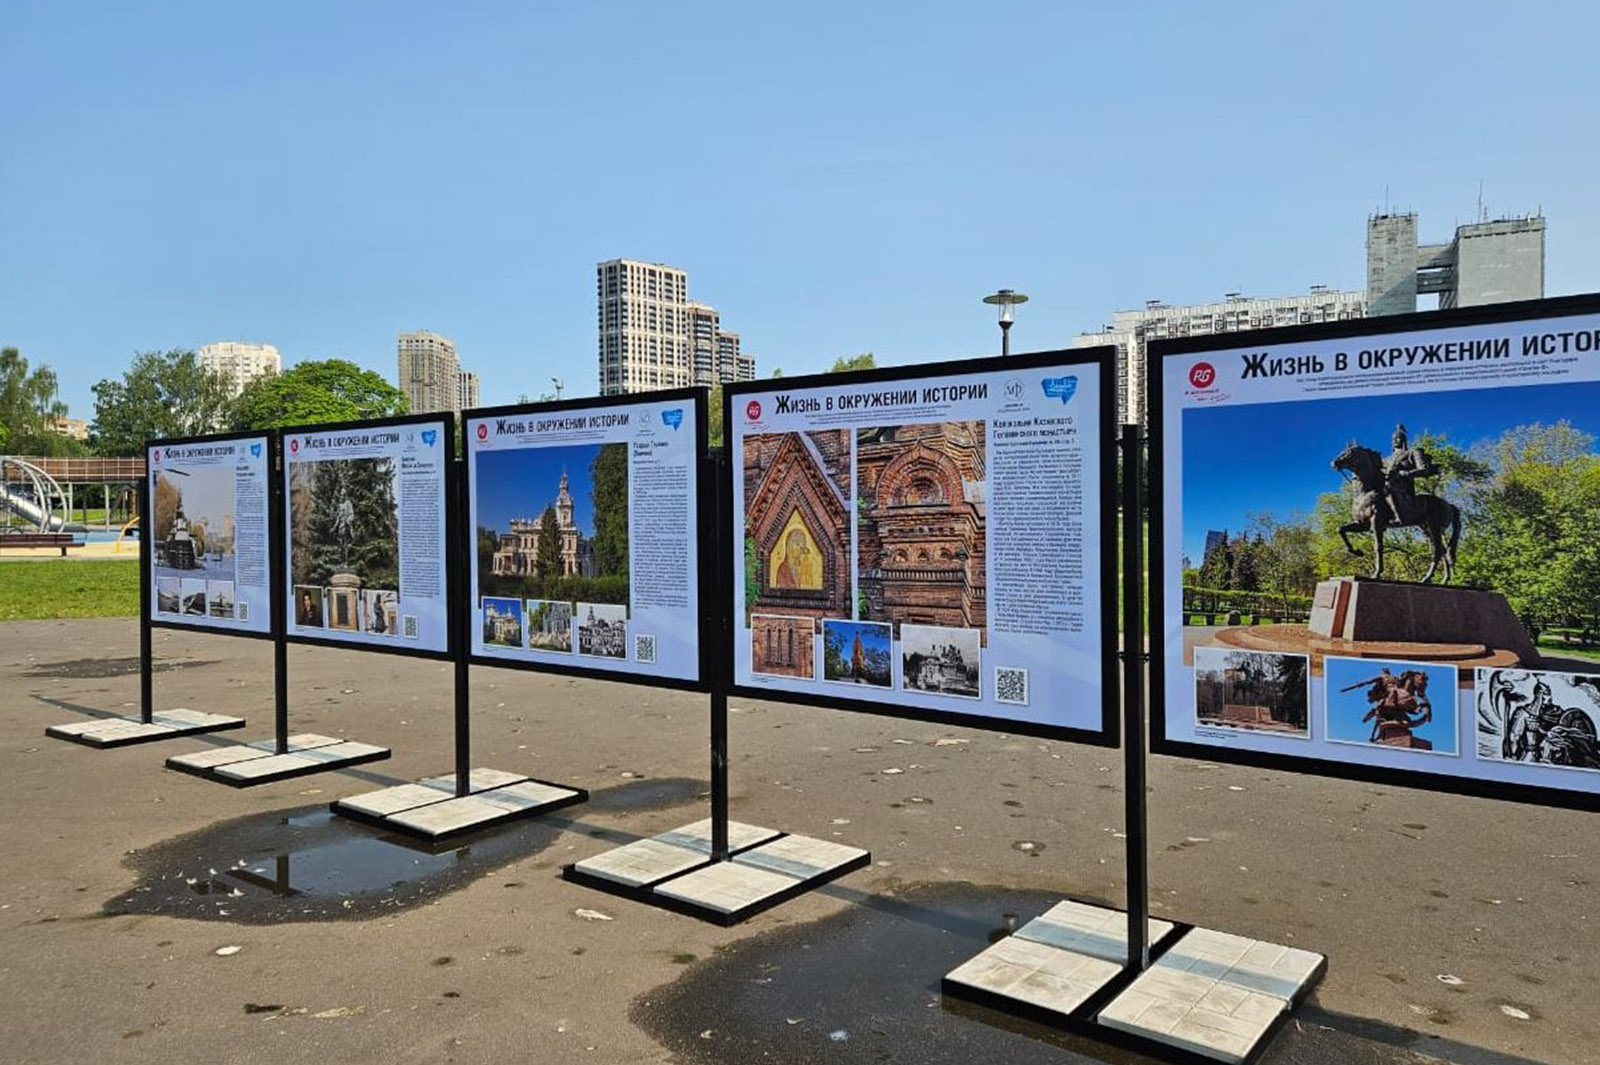 Выставка «Жизнь в окружении истории» открыта в парке «Ходынское поле»